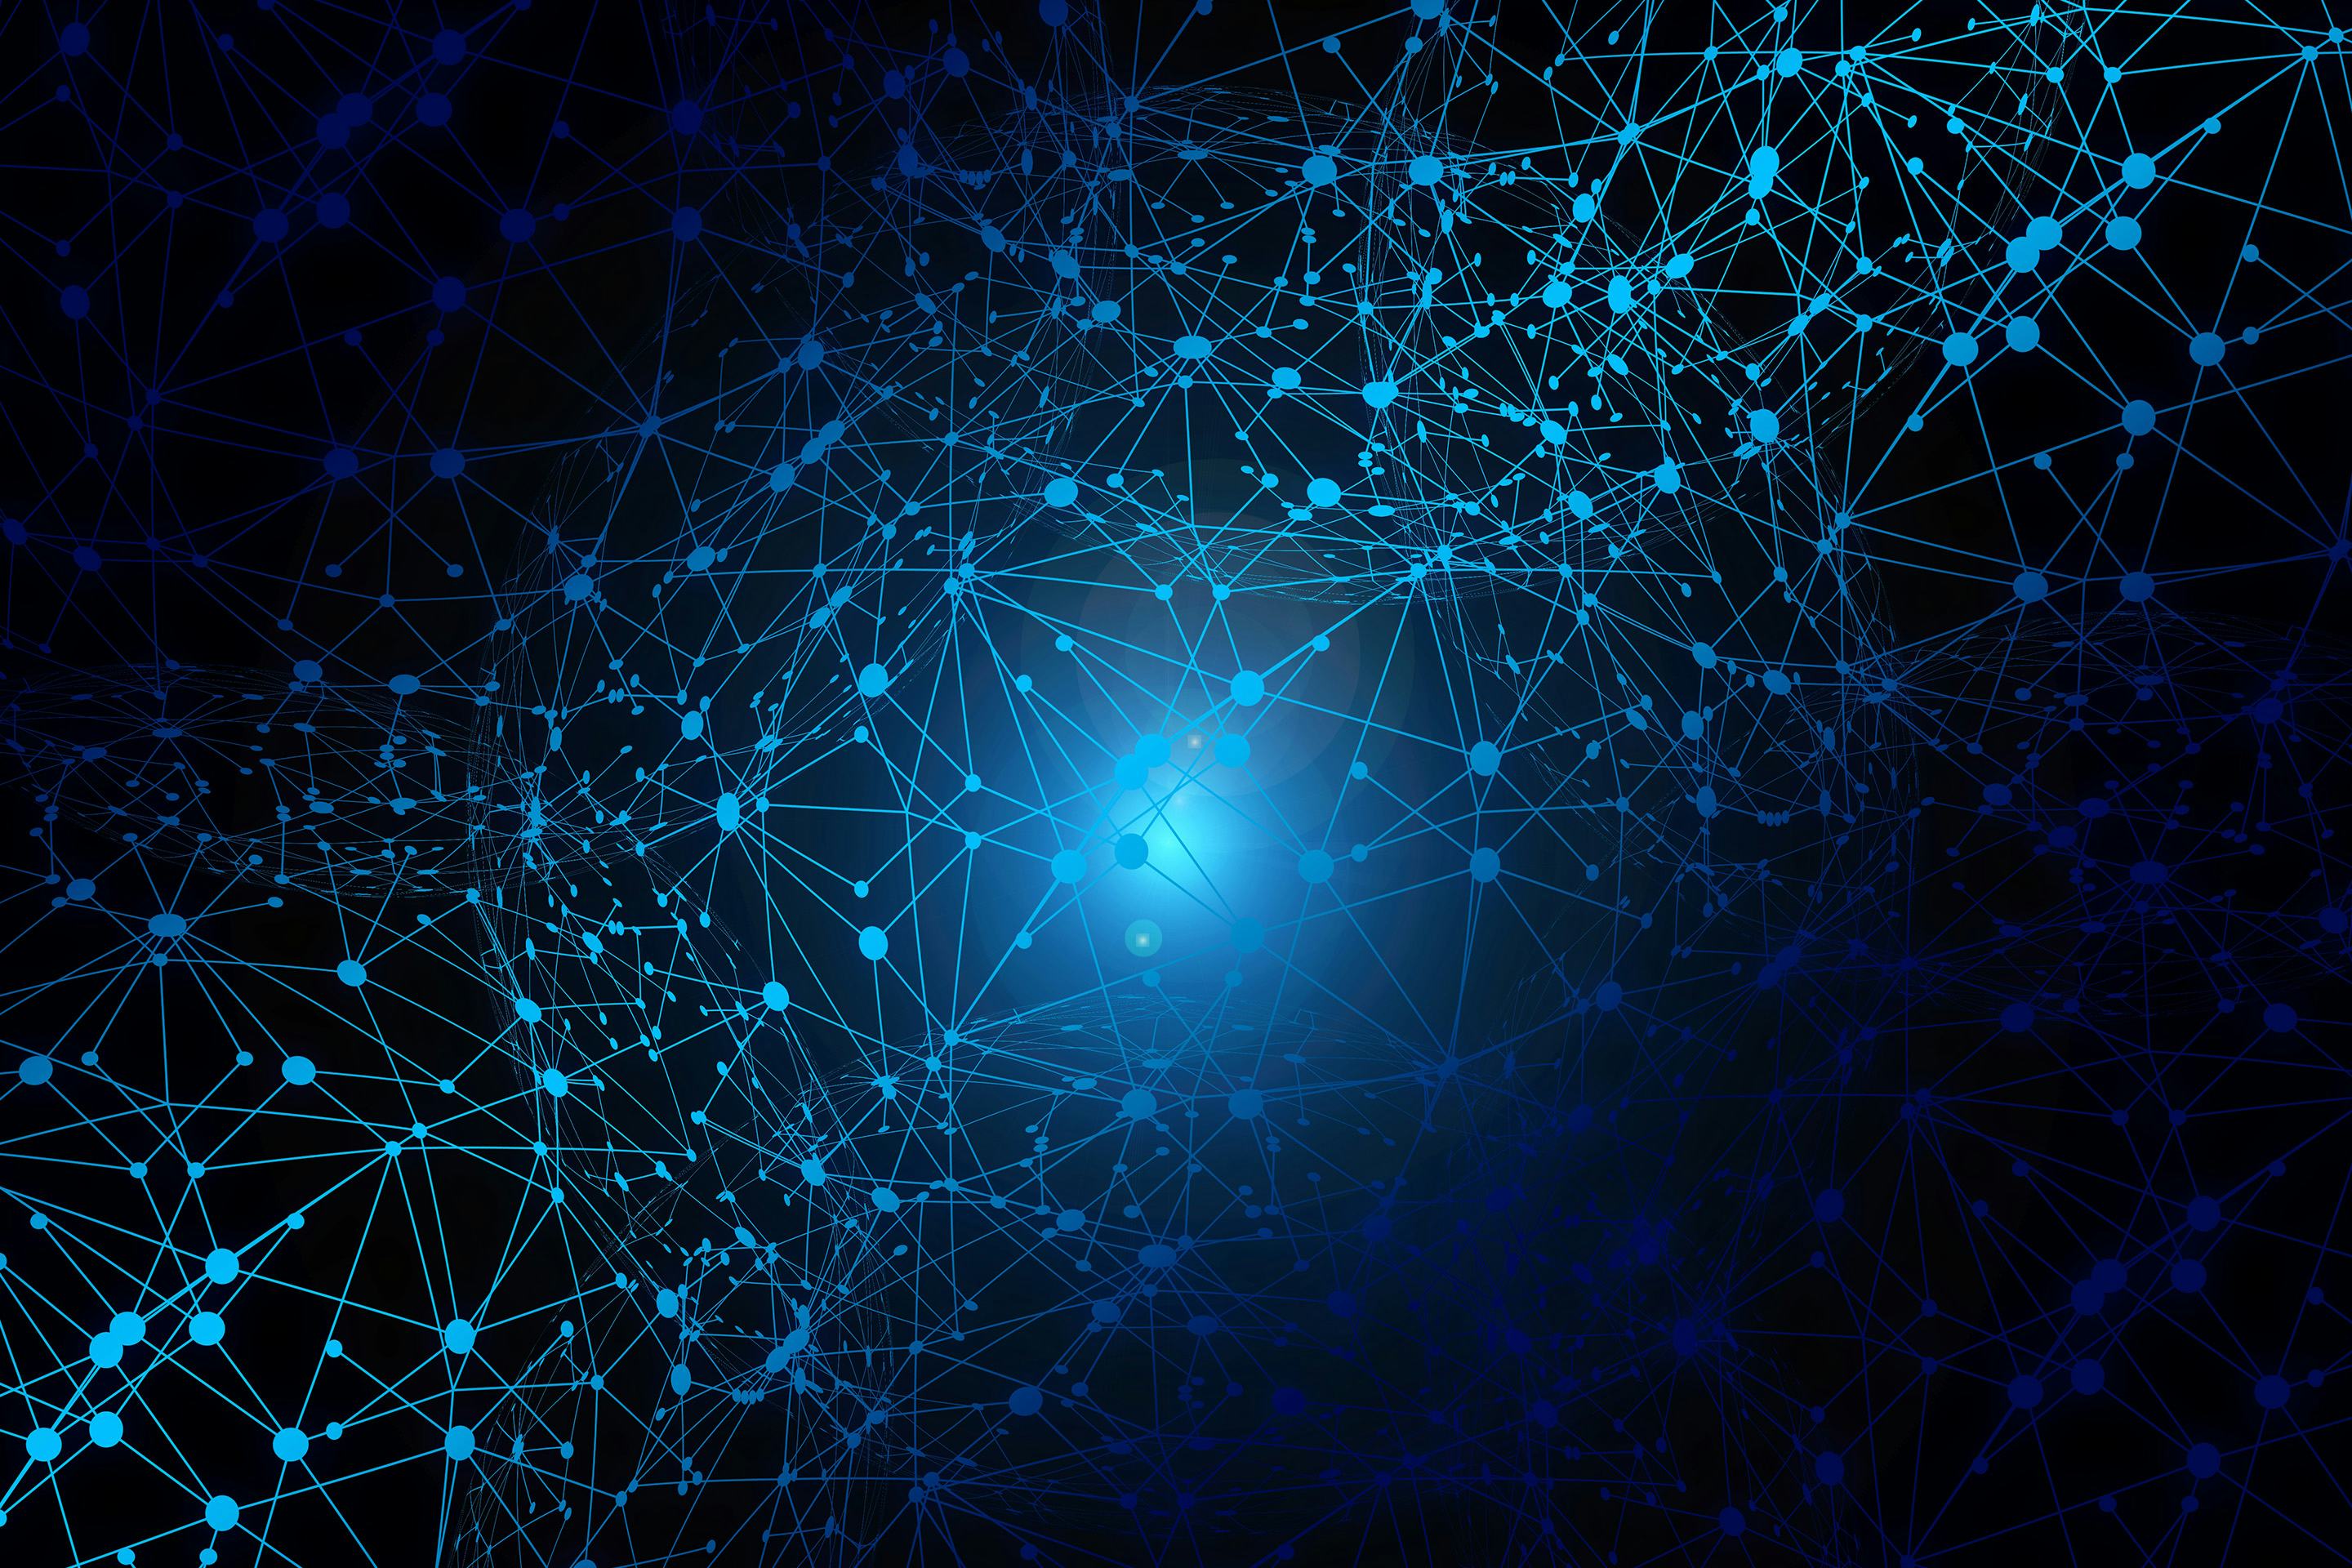 Grafik: abstraktes Netzwerk in blau auf dunklen Hintergrund